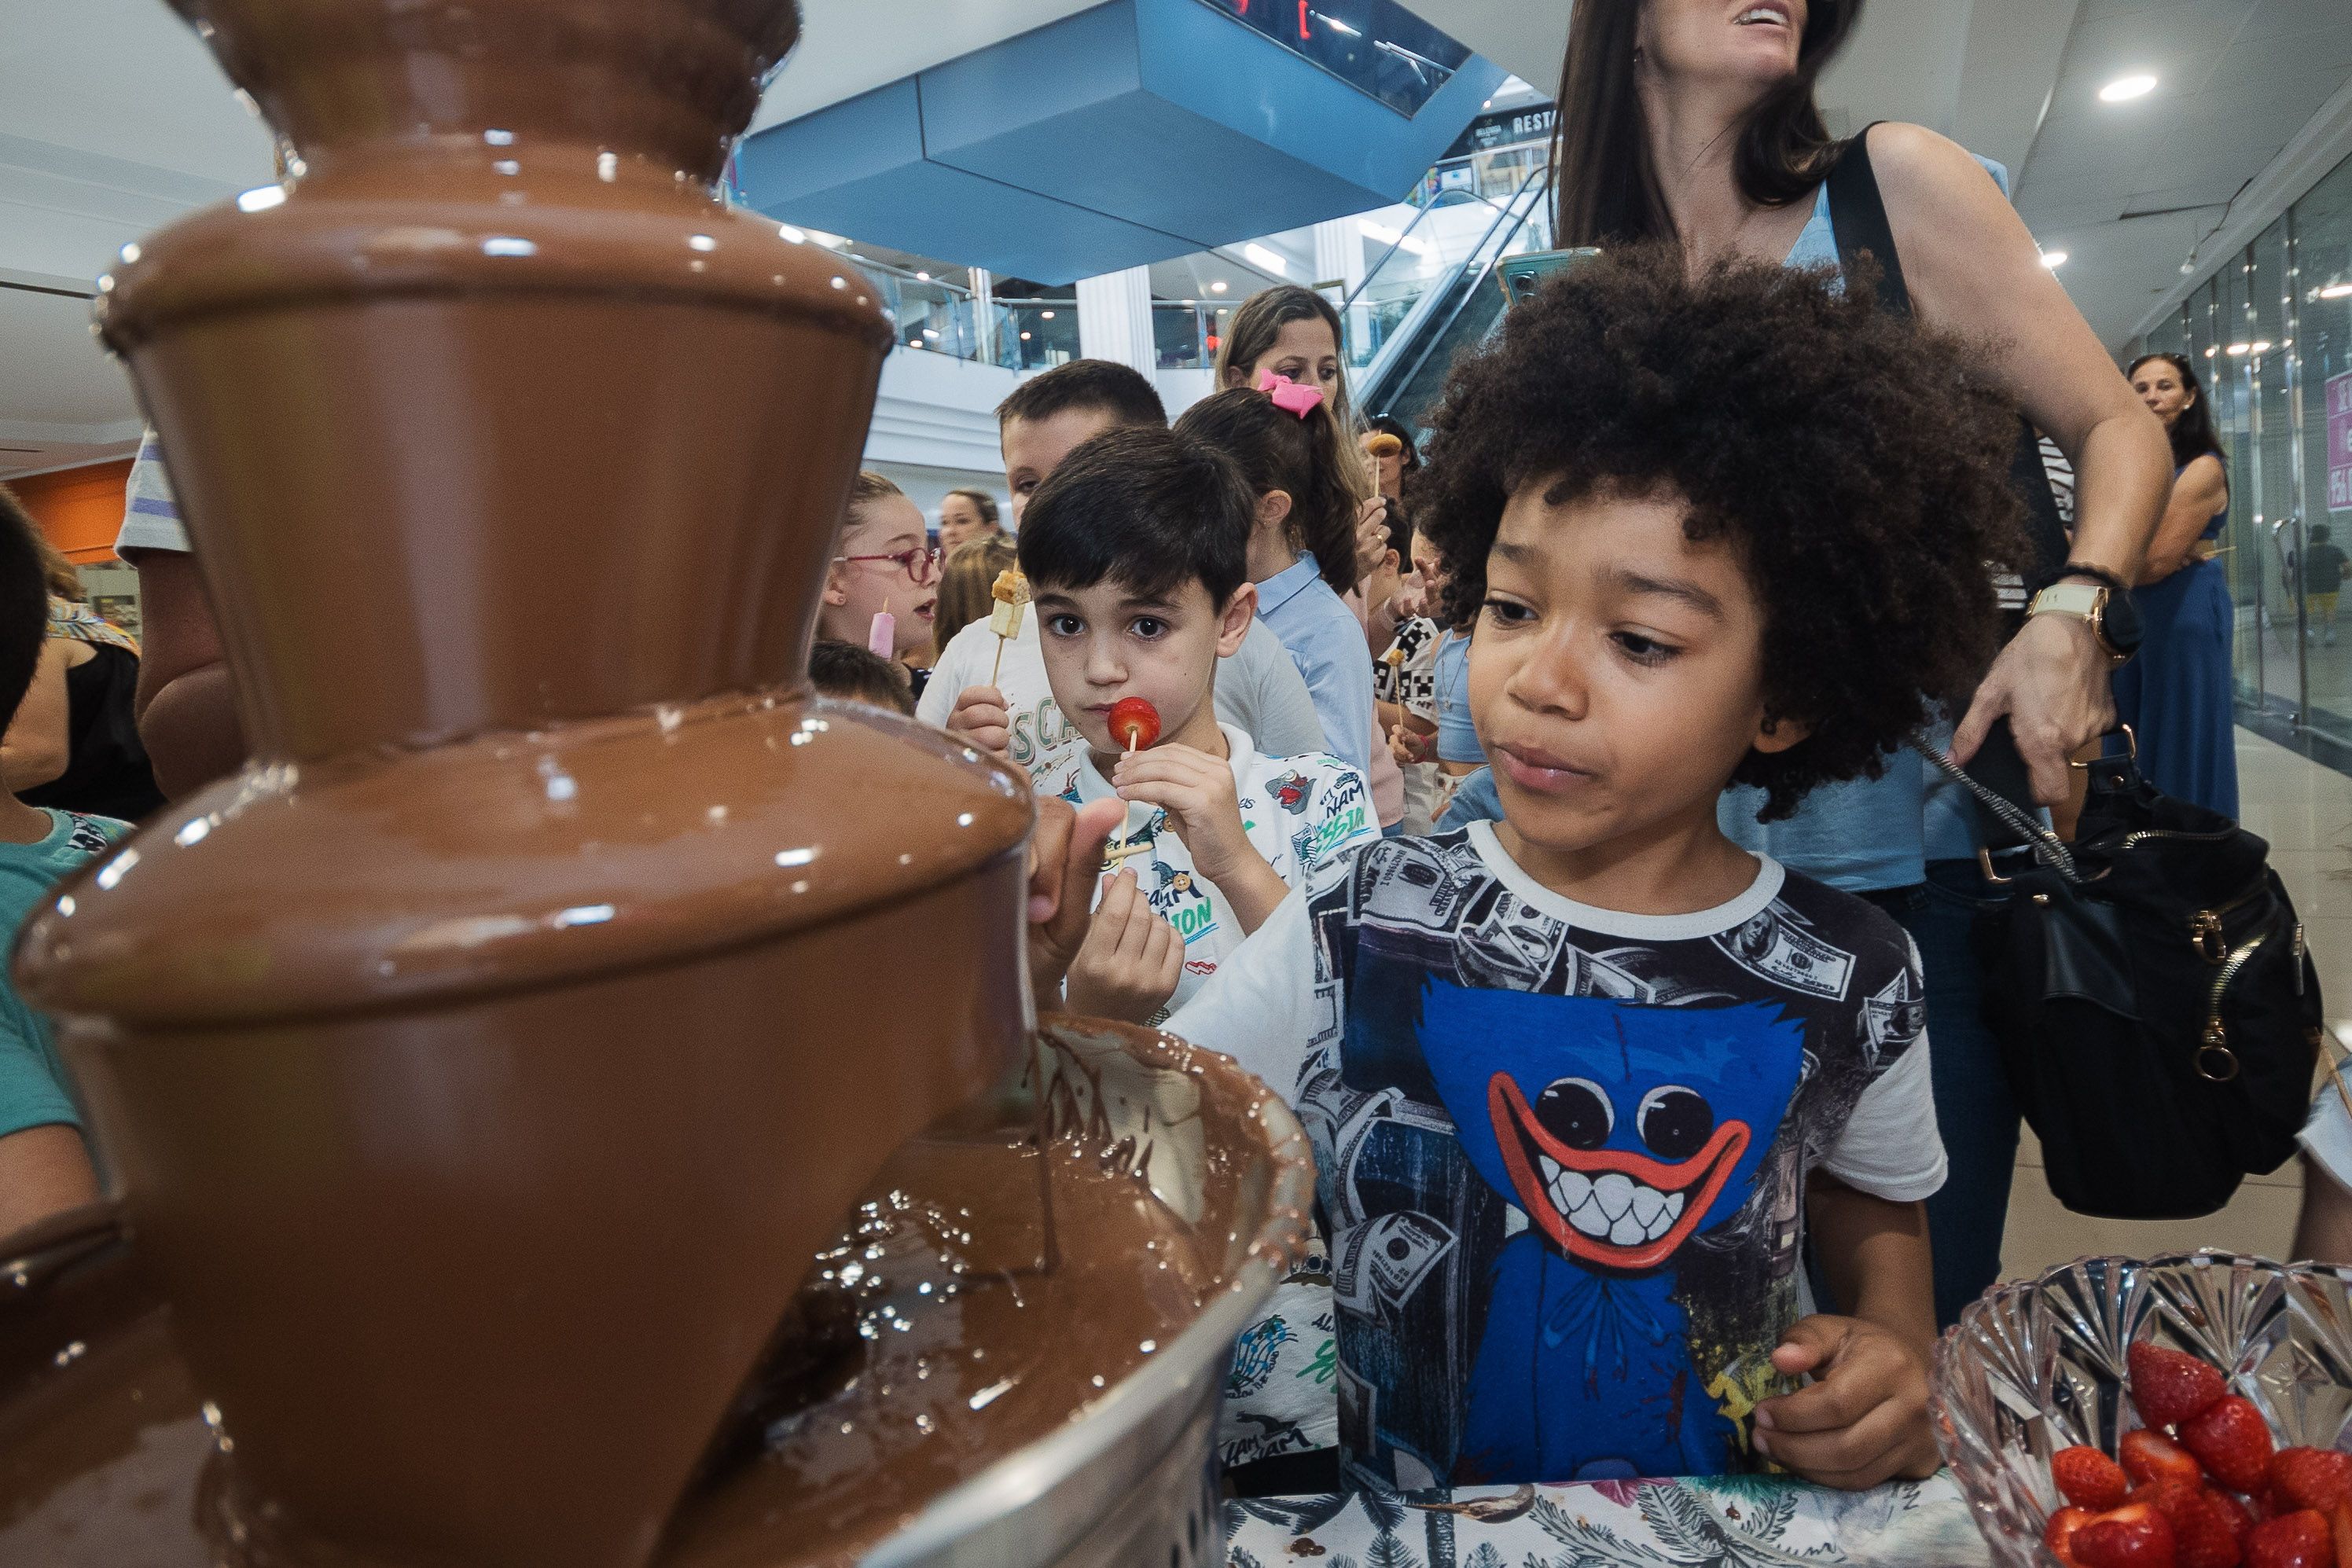 Una fuente de chocolate en la inauguración del parque infantil.